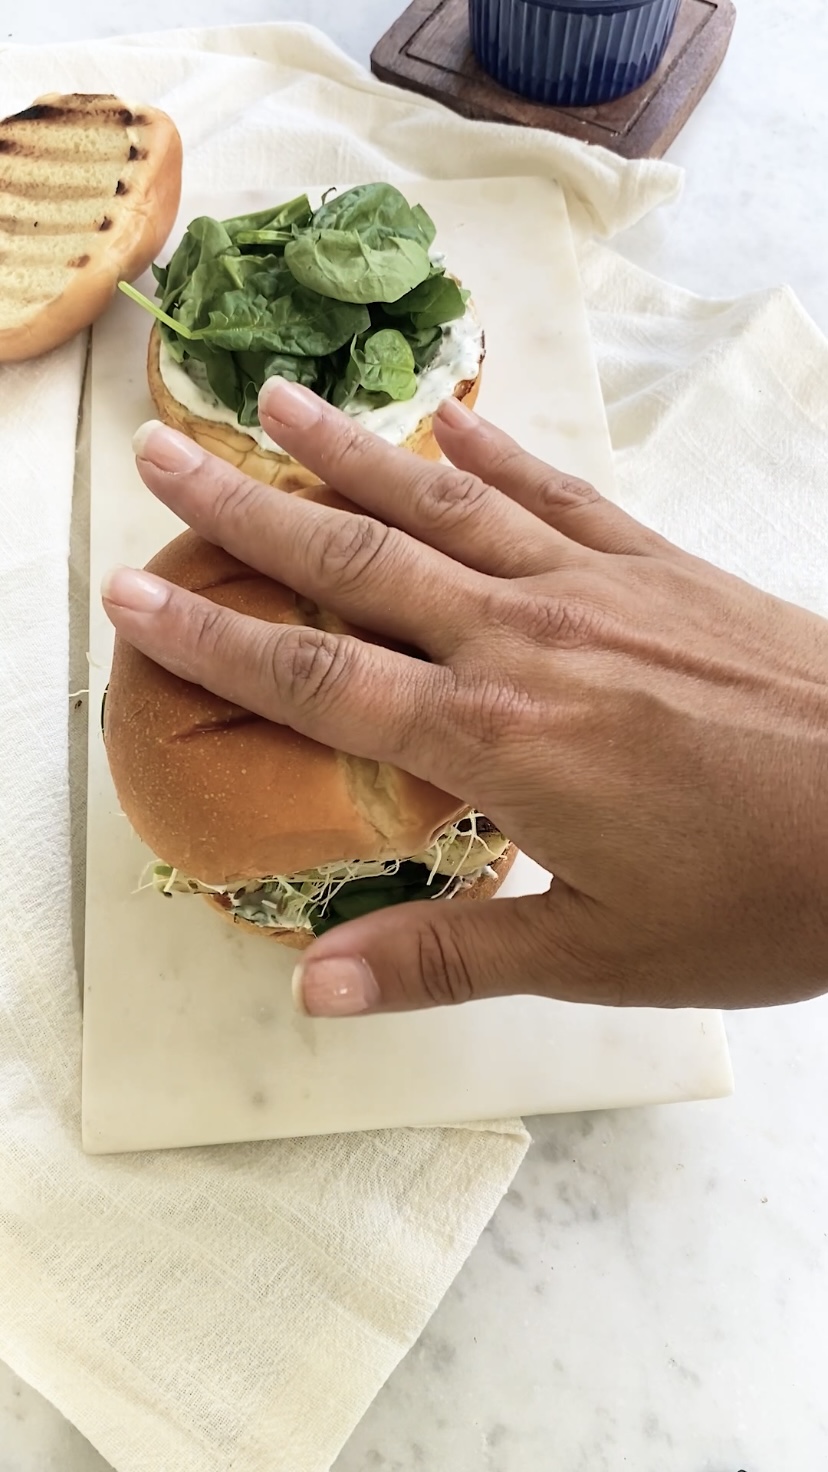 A hand adding the top bun to a burger.